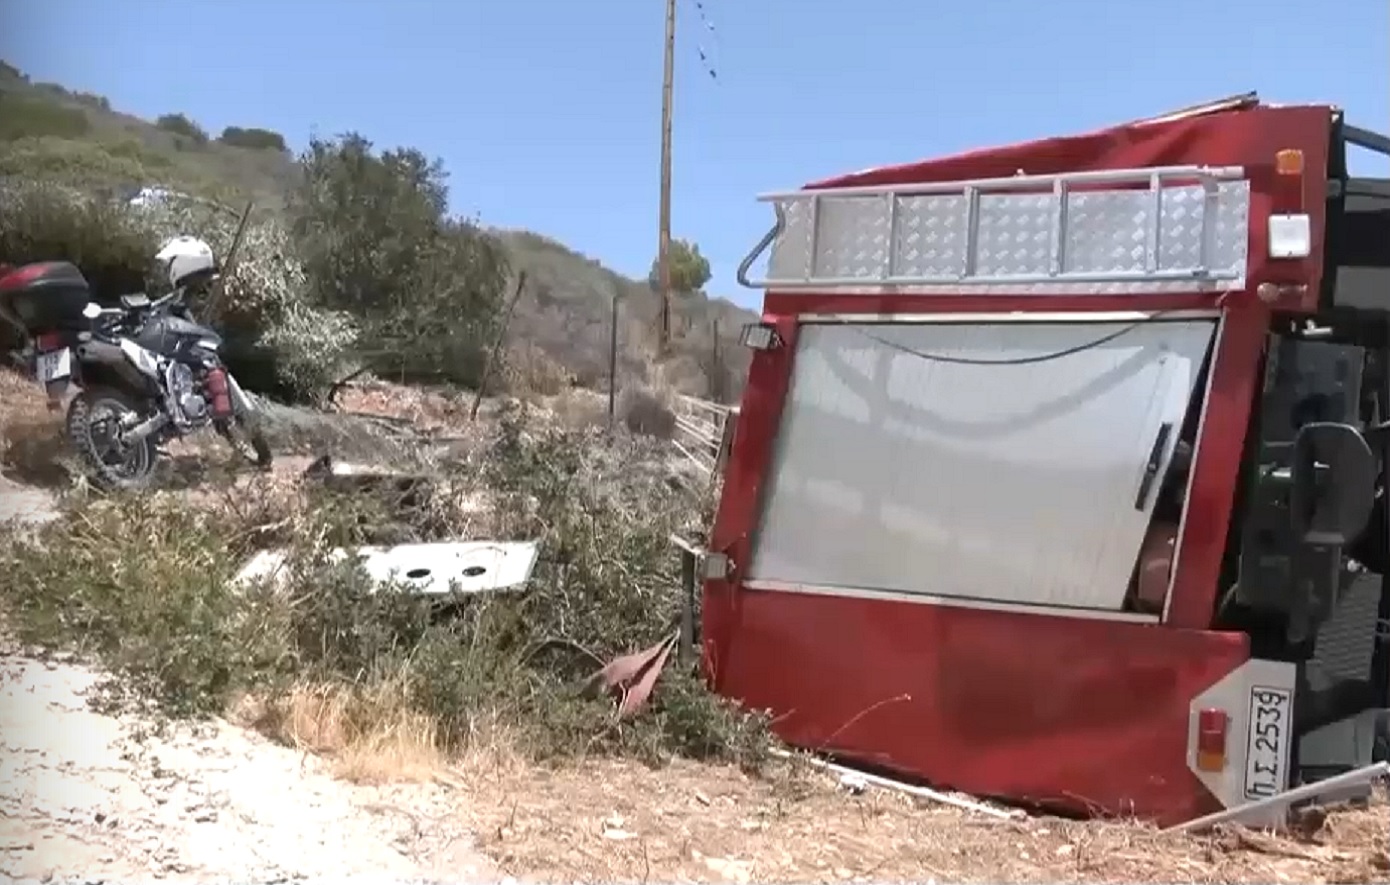 Τρόμος για τον οδηγό του πυροσβεστικού που ανατράπηκε στη Σαλαμίνα – Βίντεο ντοκουμέντο από το ατύχημα